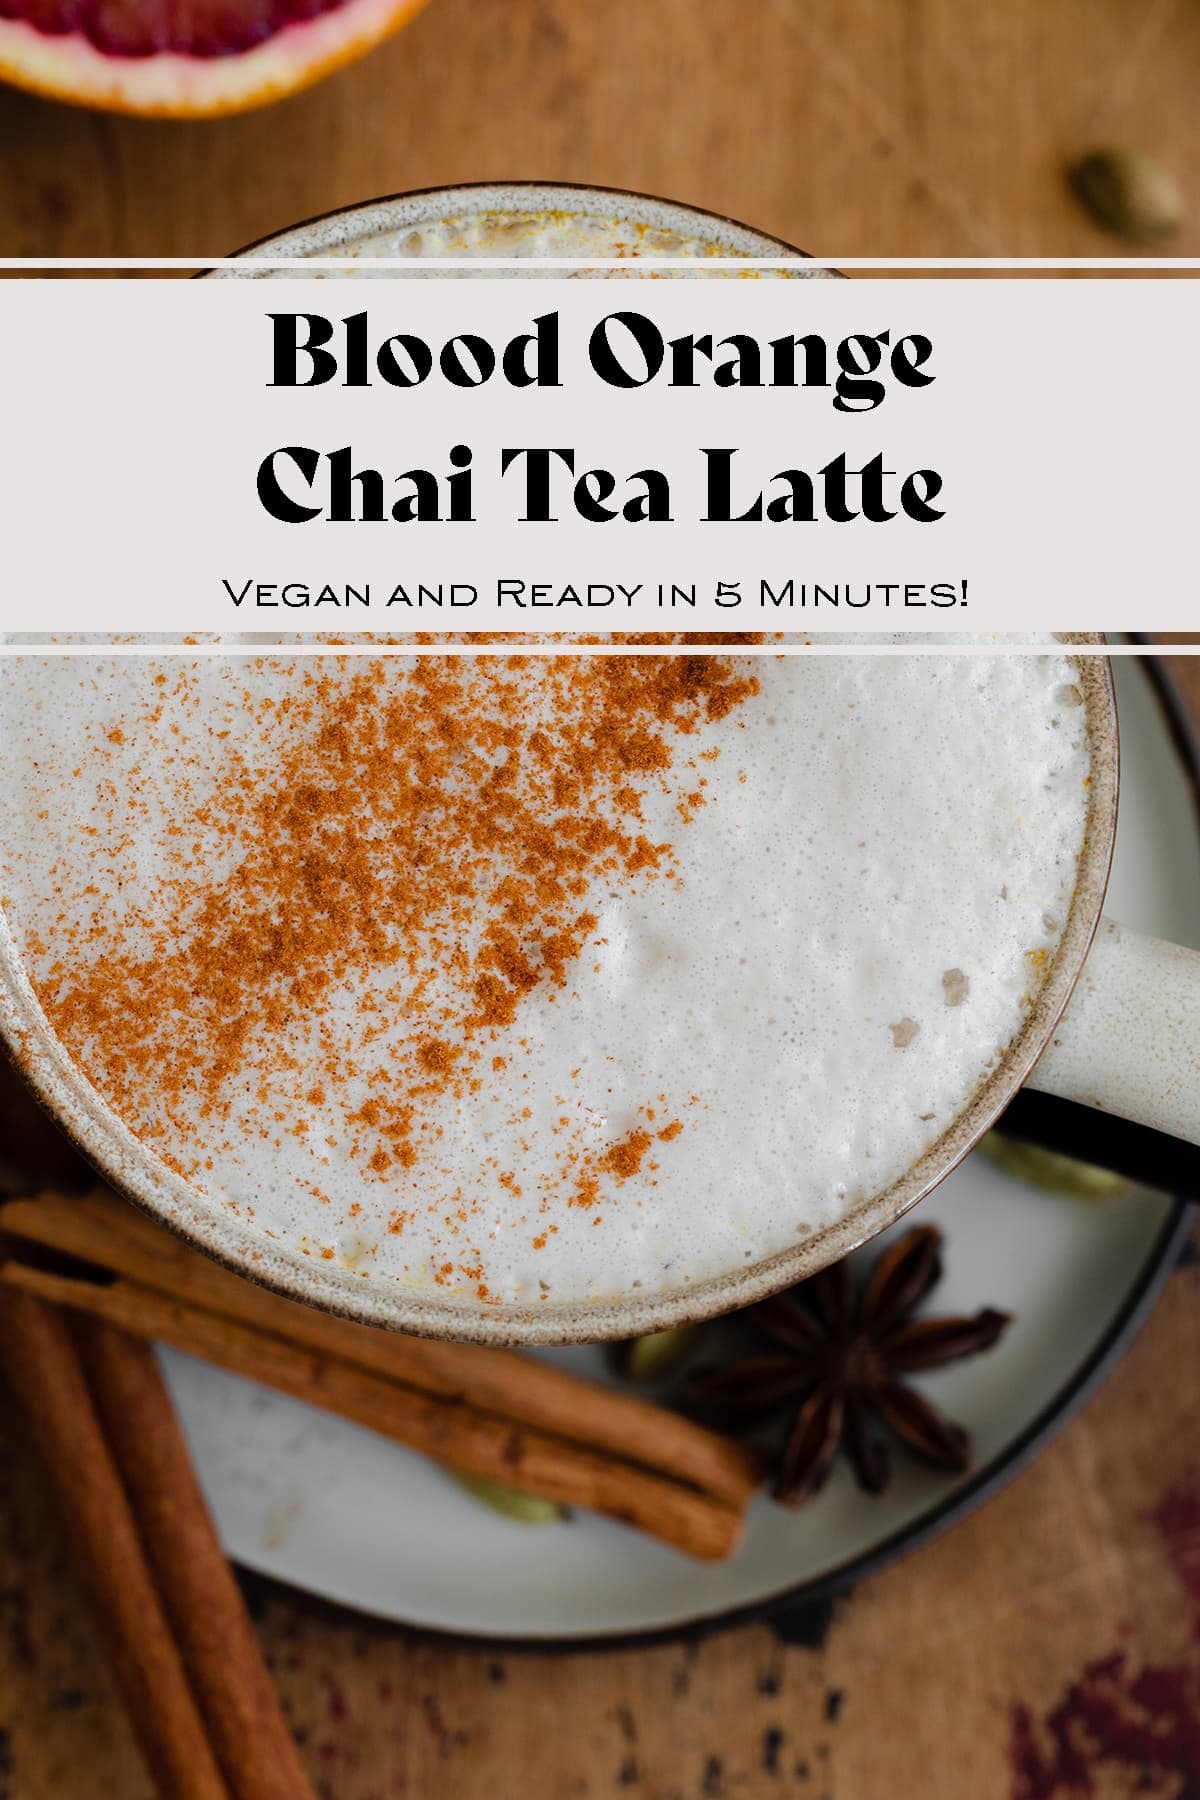 Blood Orange Chai Tea Latte